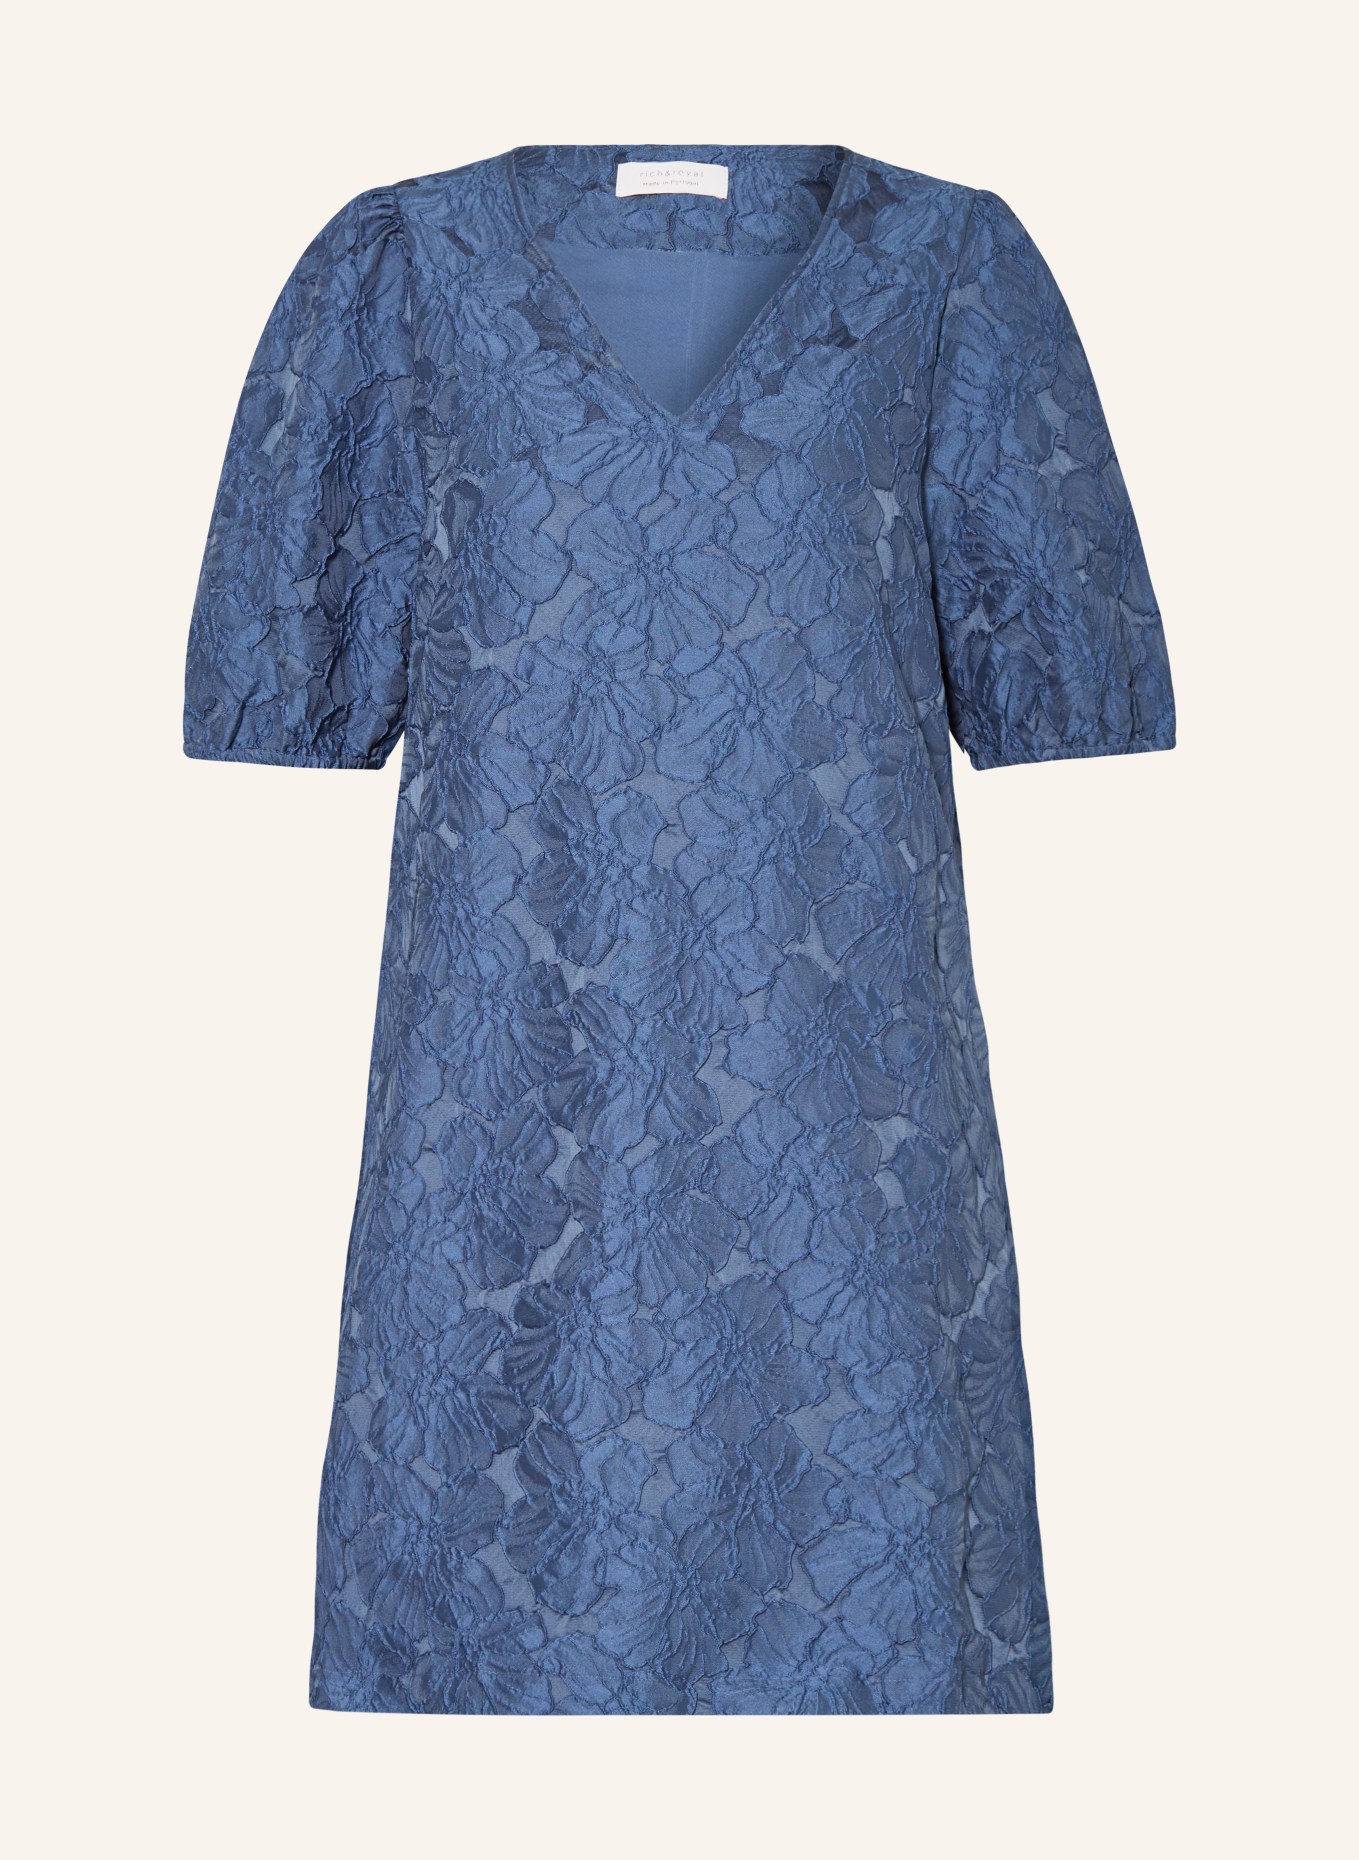 rich&royal Jacquard-Kleid, Farbe: BLAUGRAU (Bild 1)